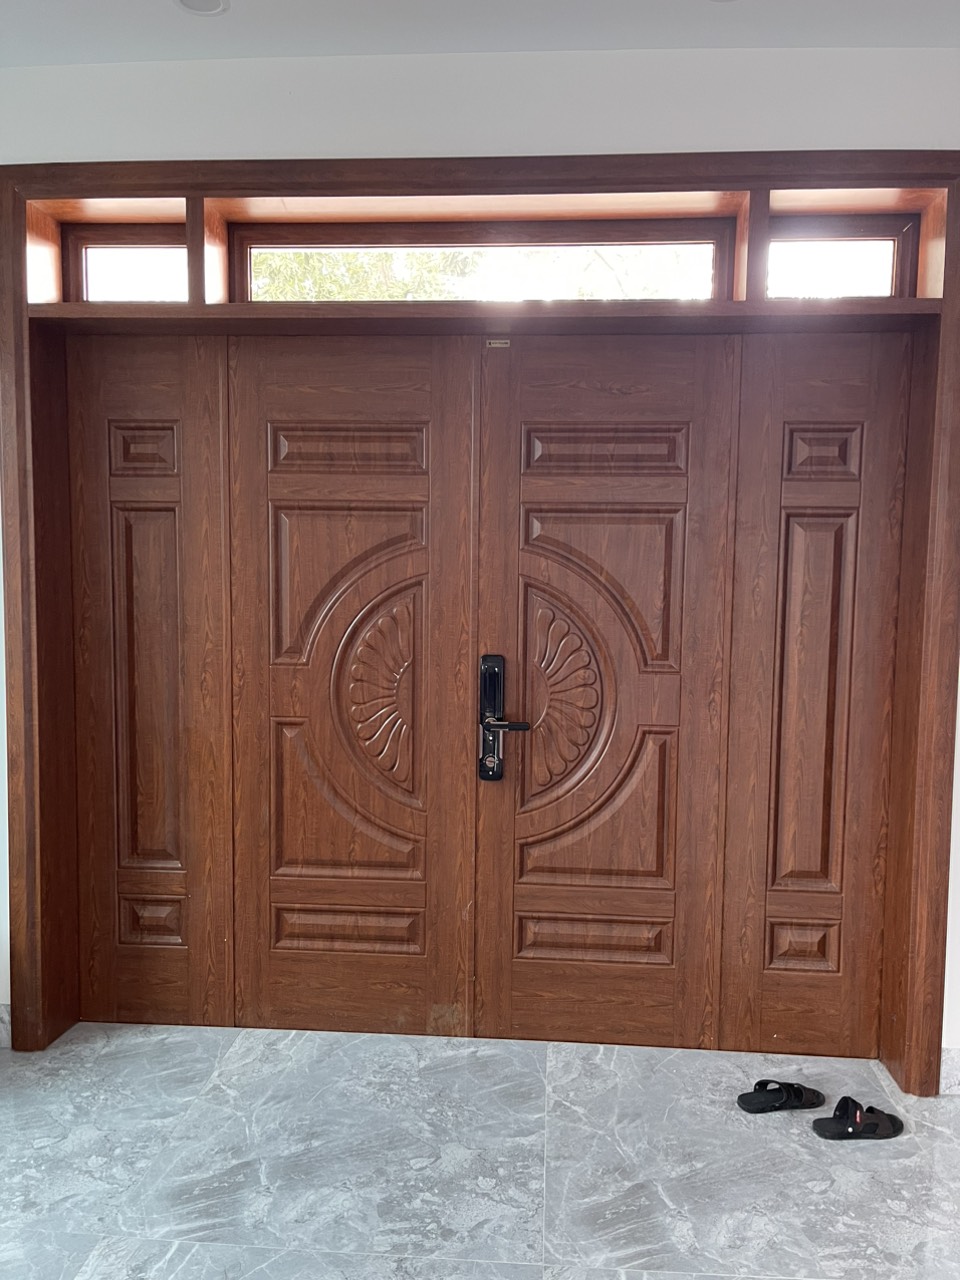 Báo giá cửa thép vân gỗ tại Đà Lạt – Cửa đẹp nhà sang